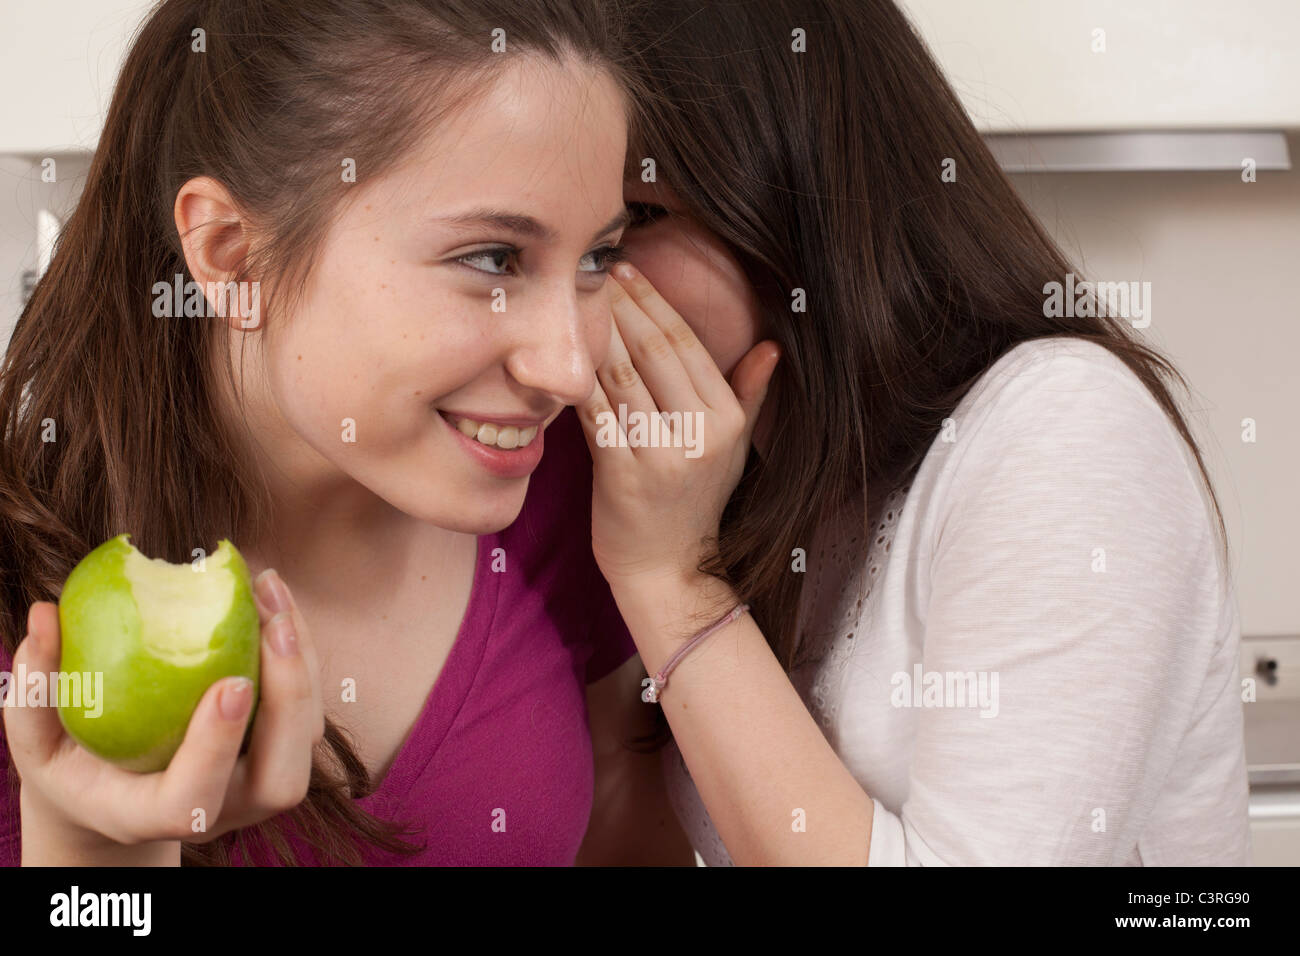 Las adolescentes comiendo una manzana y comparten un secreto Foto de stock